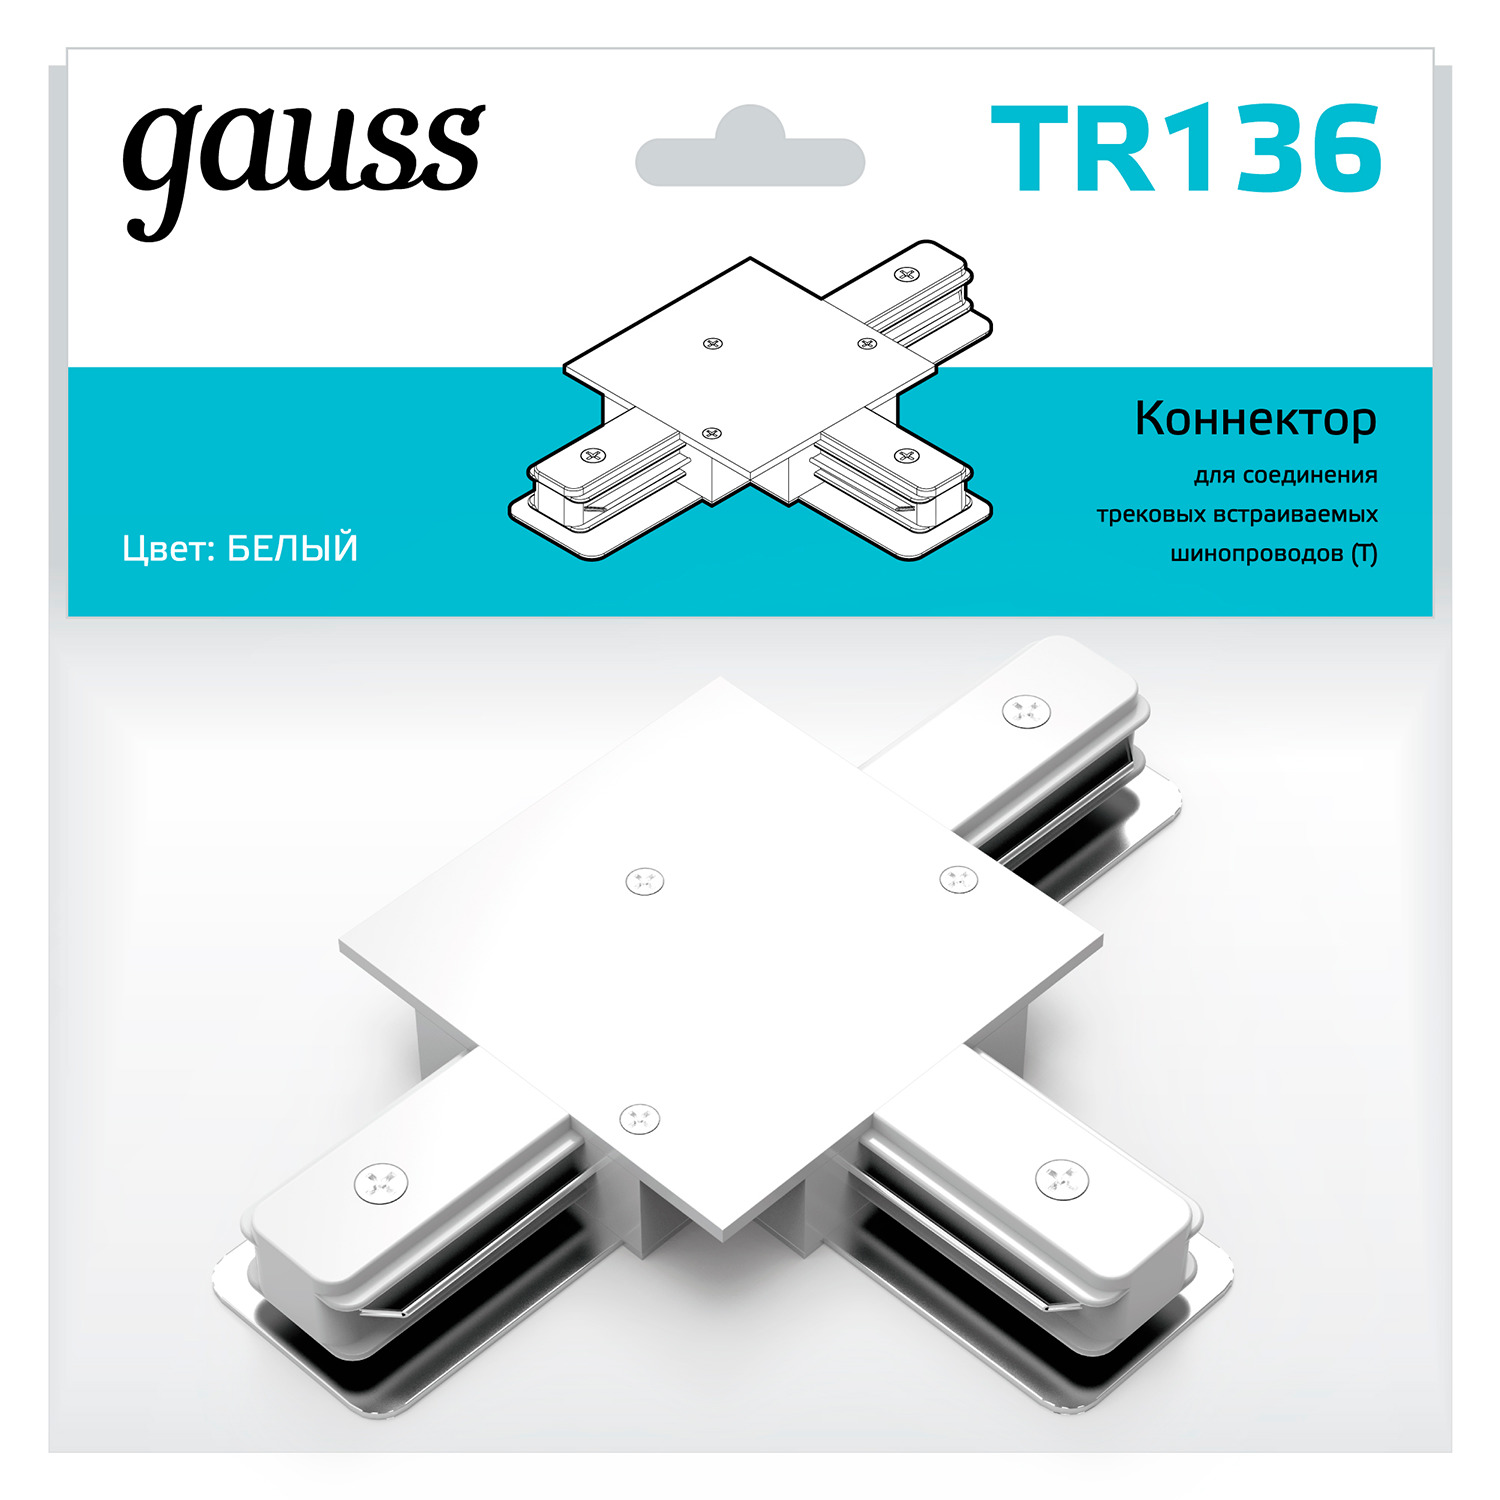 Коннектор Gauss для встраиваемых трековых шинопроводов (T) белый коннектор gauss для встраиваемых трековых шинопроводов белый